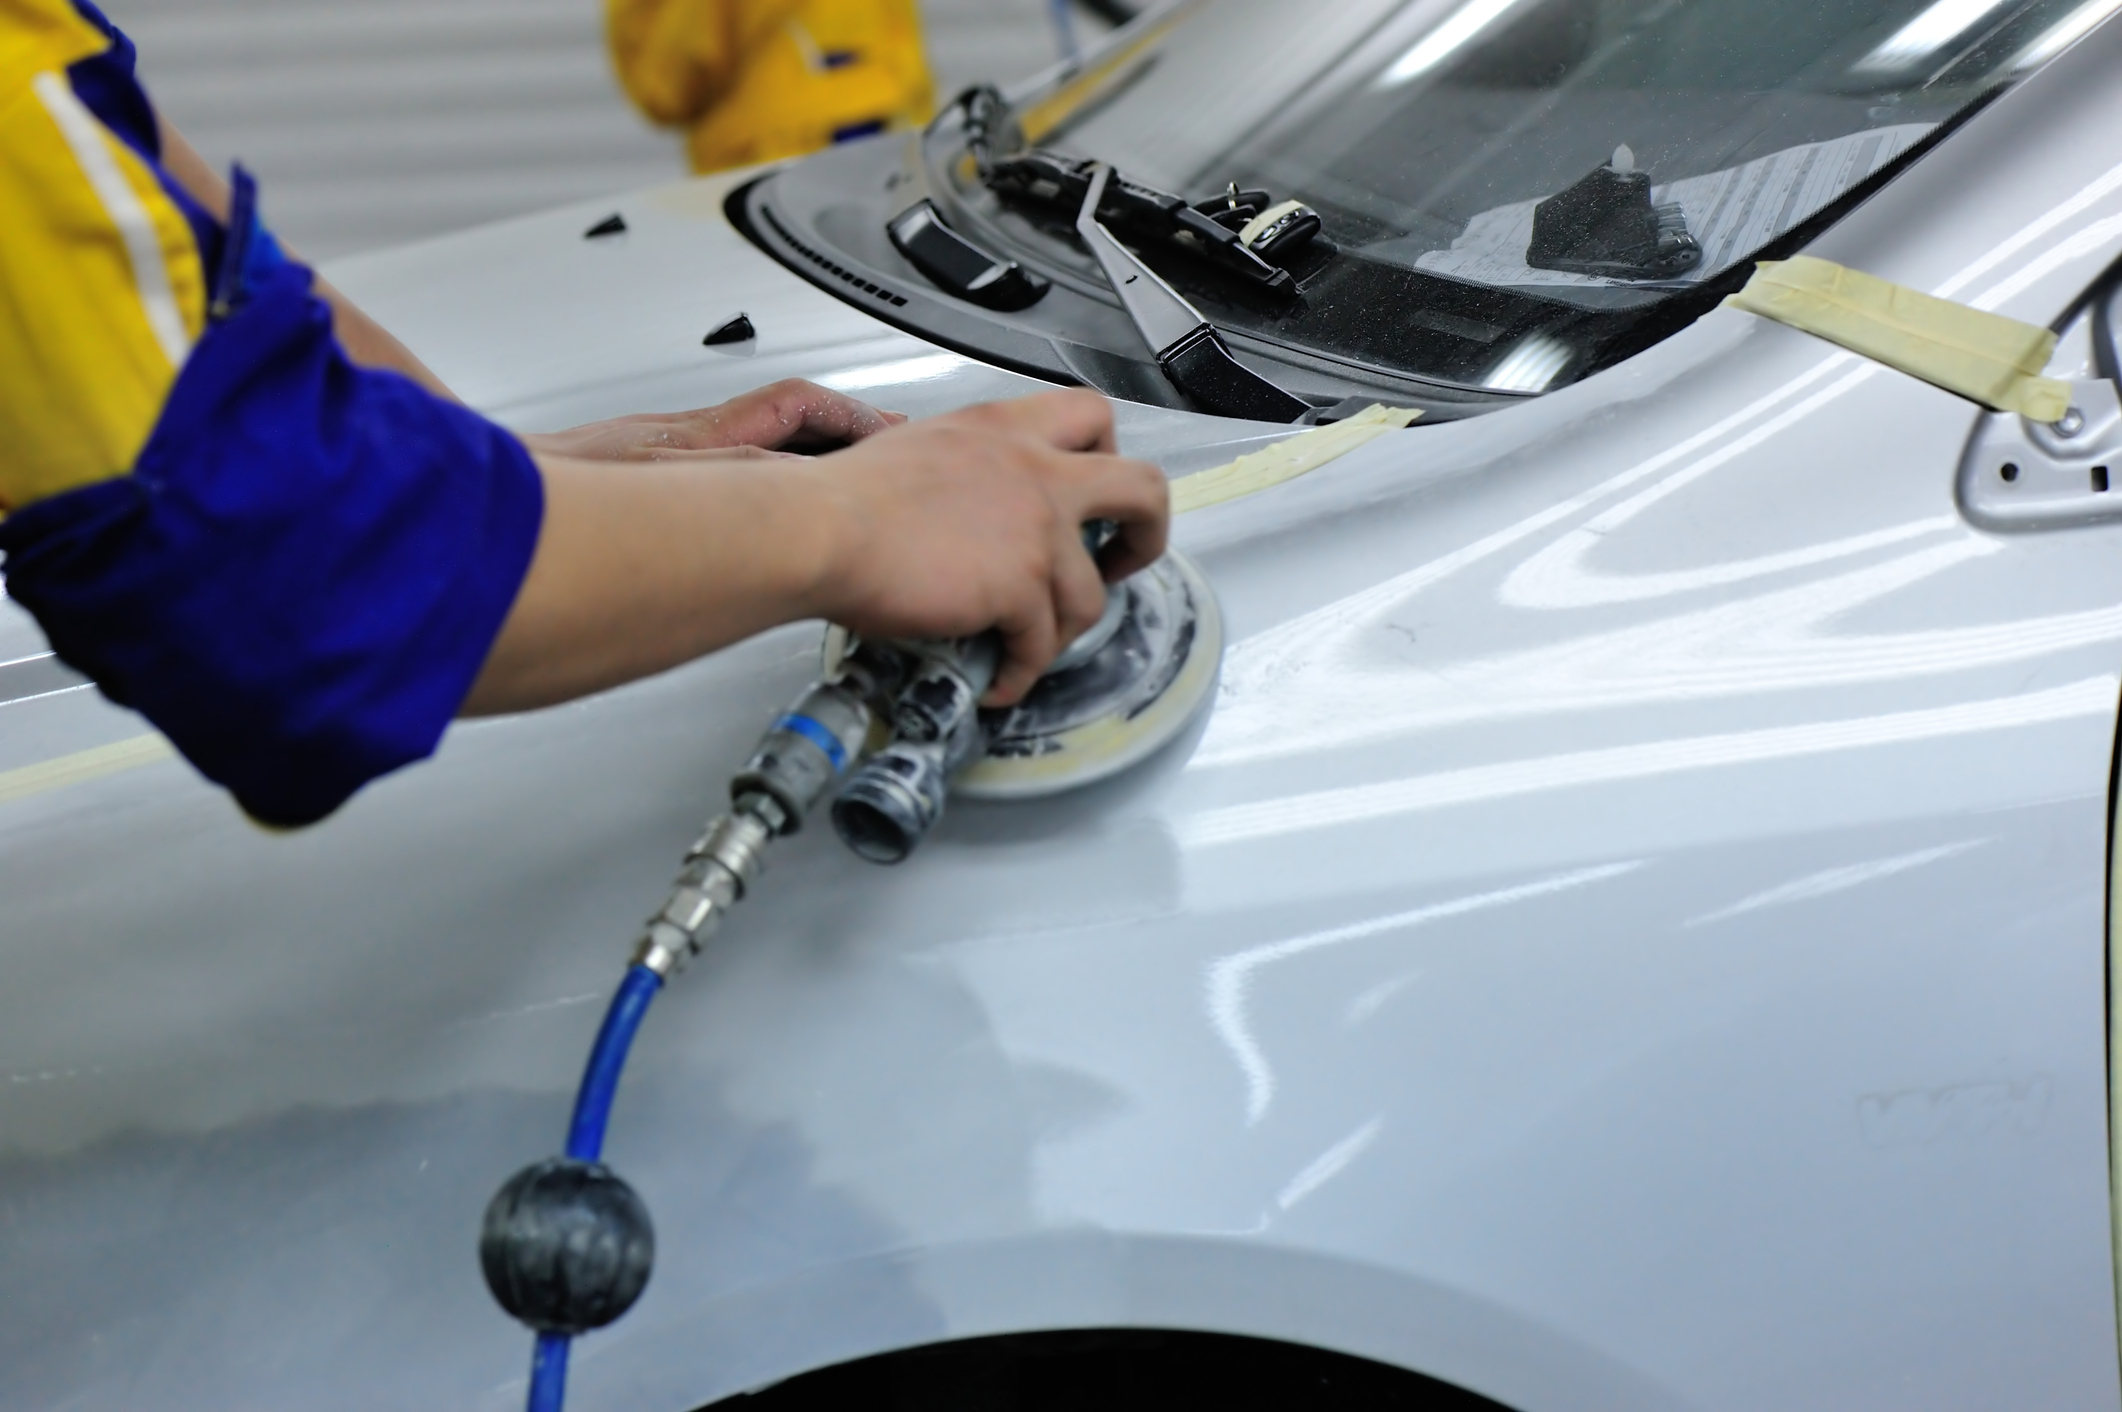 Réparation carrosserie : explications et prix